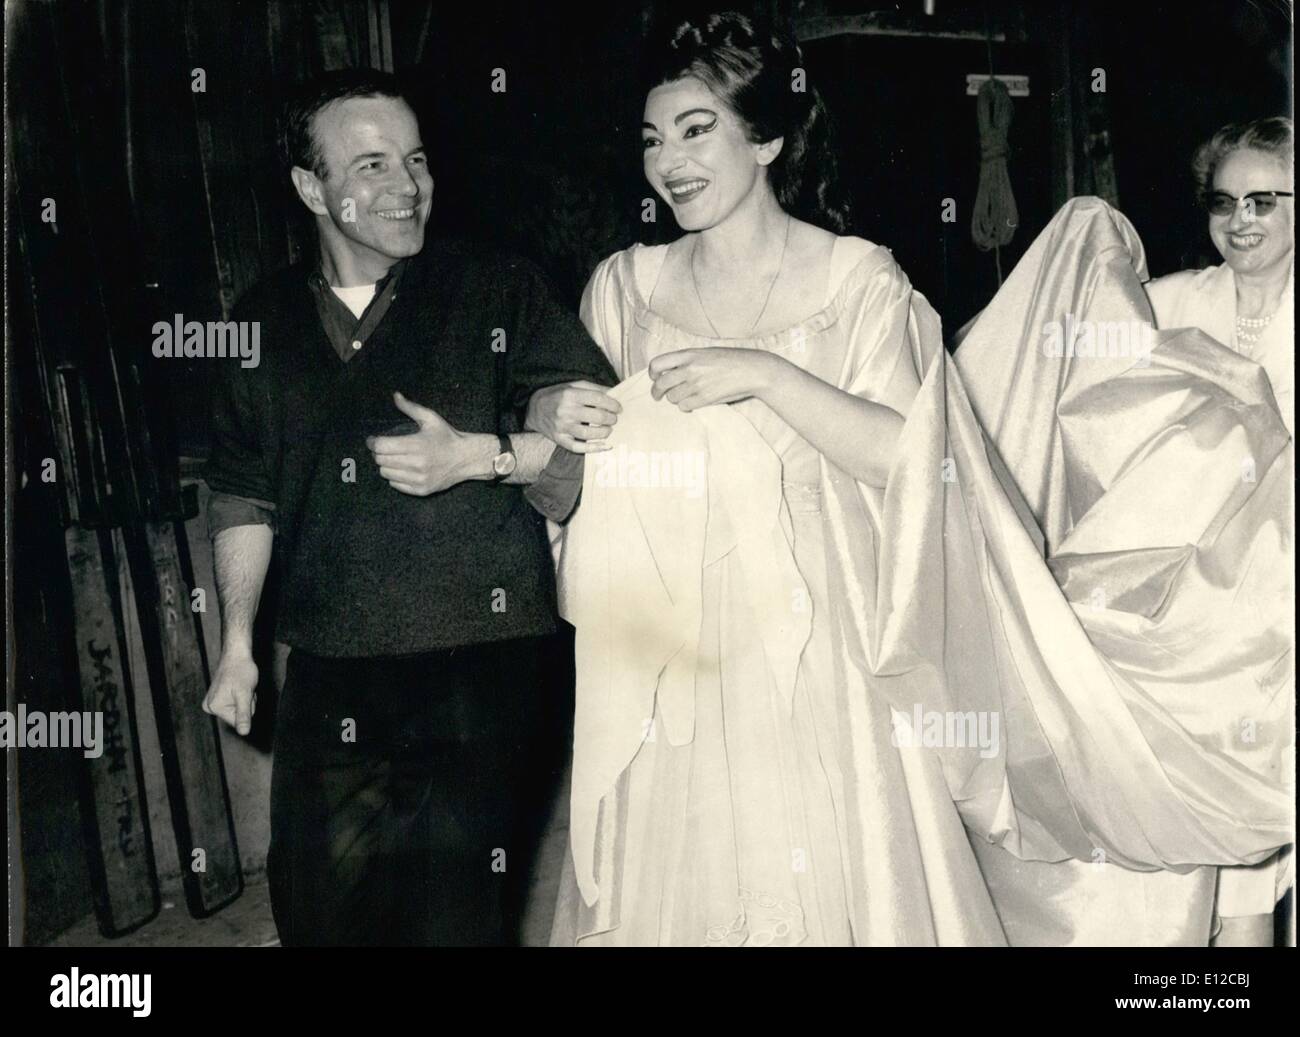 16. Dezember 2011 - die Callas in Paris. Die große Opernsängerin Maria Callas befindet sich derzeit in Paris, wo sie durchführen wird, ab morgen, dem Norma an der Oper. Gestern ging sie bei den Proben unter der Leitung des Dirigenten Georges Pretre. Die ausgewählte Zuschauer, die die Probe besucht, sagte, dass ihre Stimme nichts von seiner Schönheit verloren hatte. OPS / Maria Callas mit Dirigent Georges Pretre Vollbühne Kleidung bei der Probe ankommen. Stockfoto